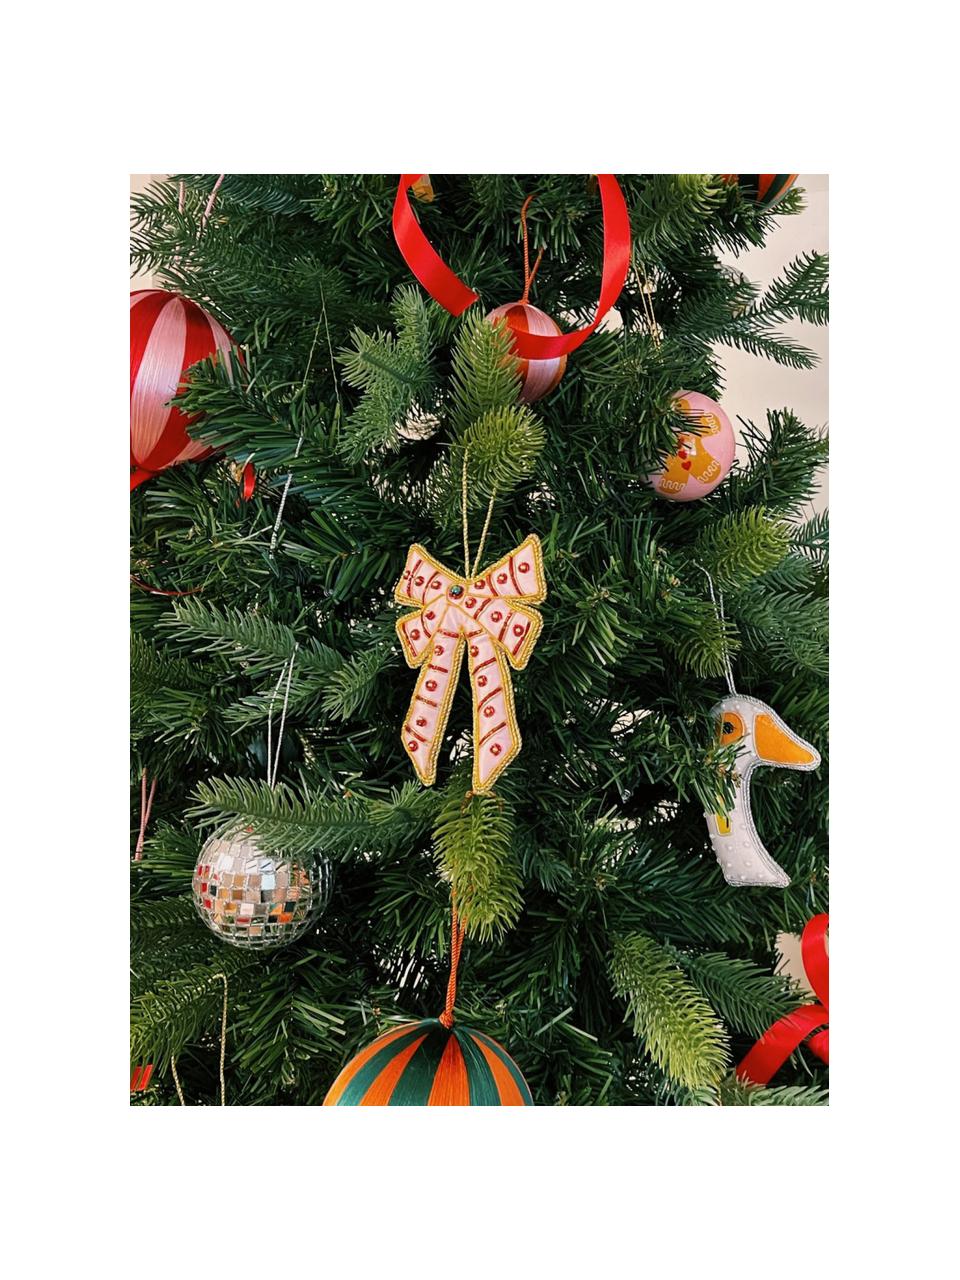 Décorations de sapin de Noël Extravagant Bow, 2 pièces, Fibre synthétique, Rose pâle, doré, rouge, larg. 8 x haut. 13 cm